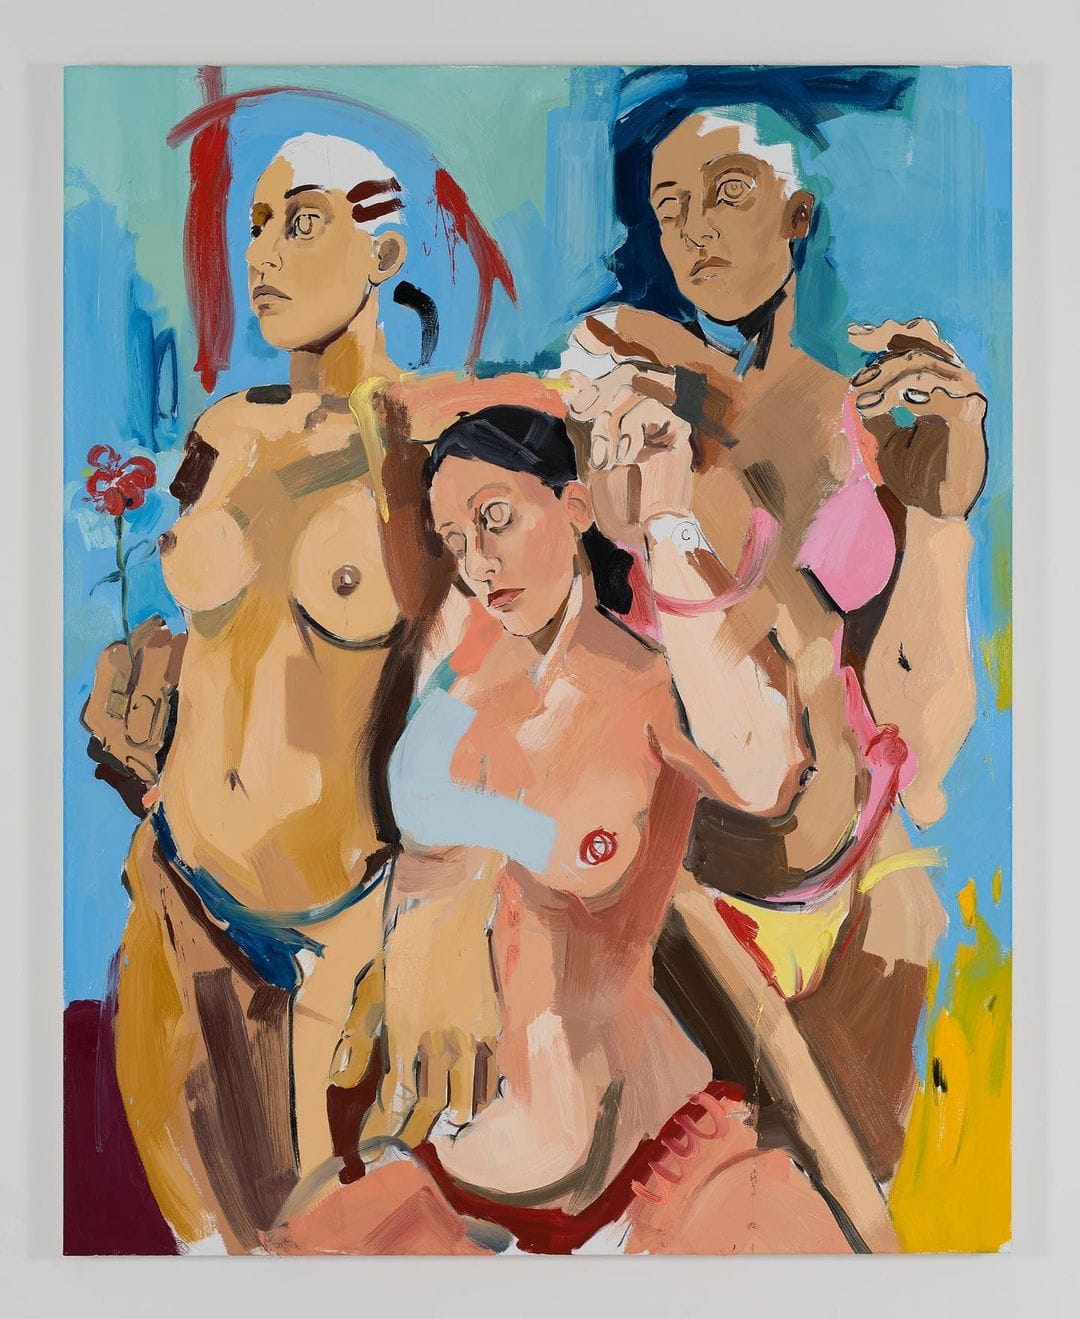 Trois femmes sont présentées sur cette peinture de Cristina BanBan